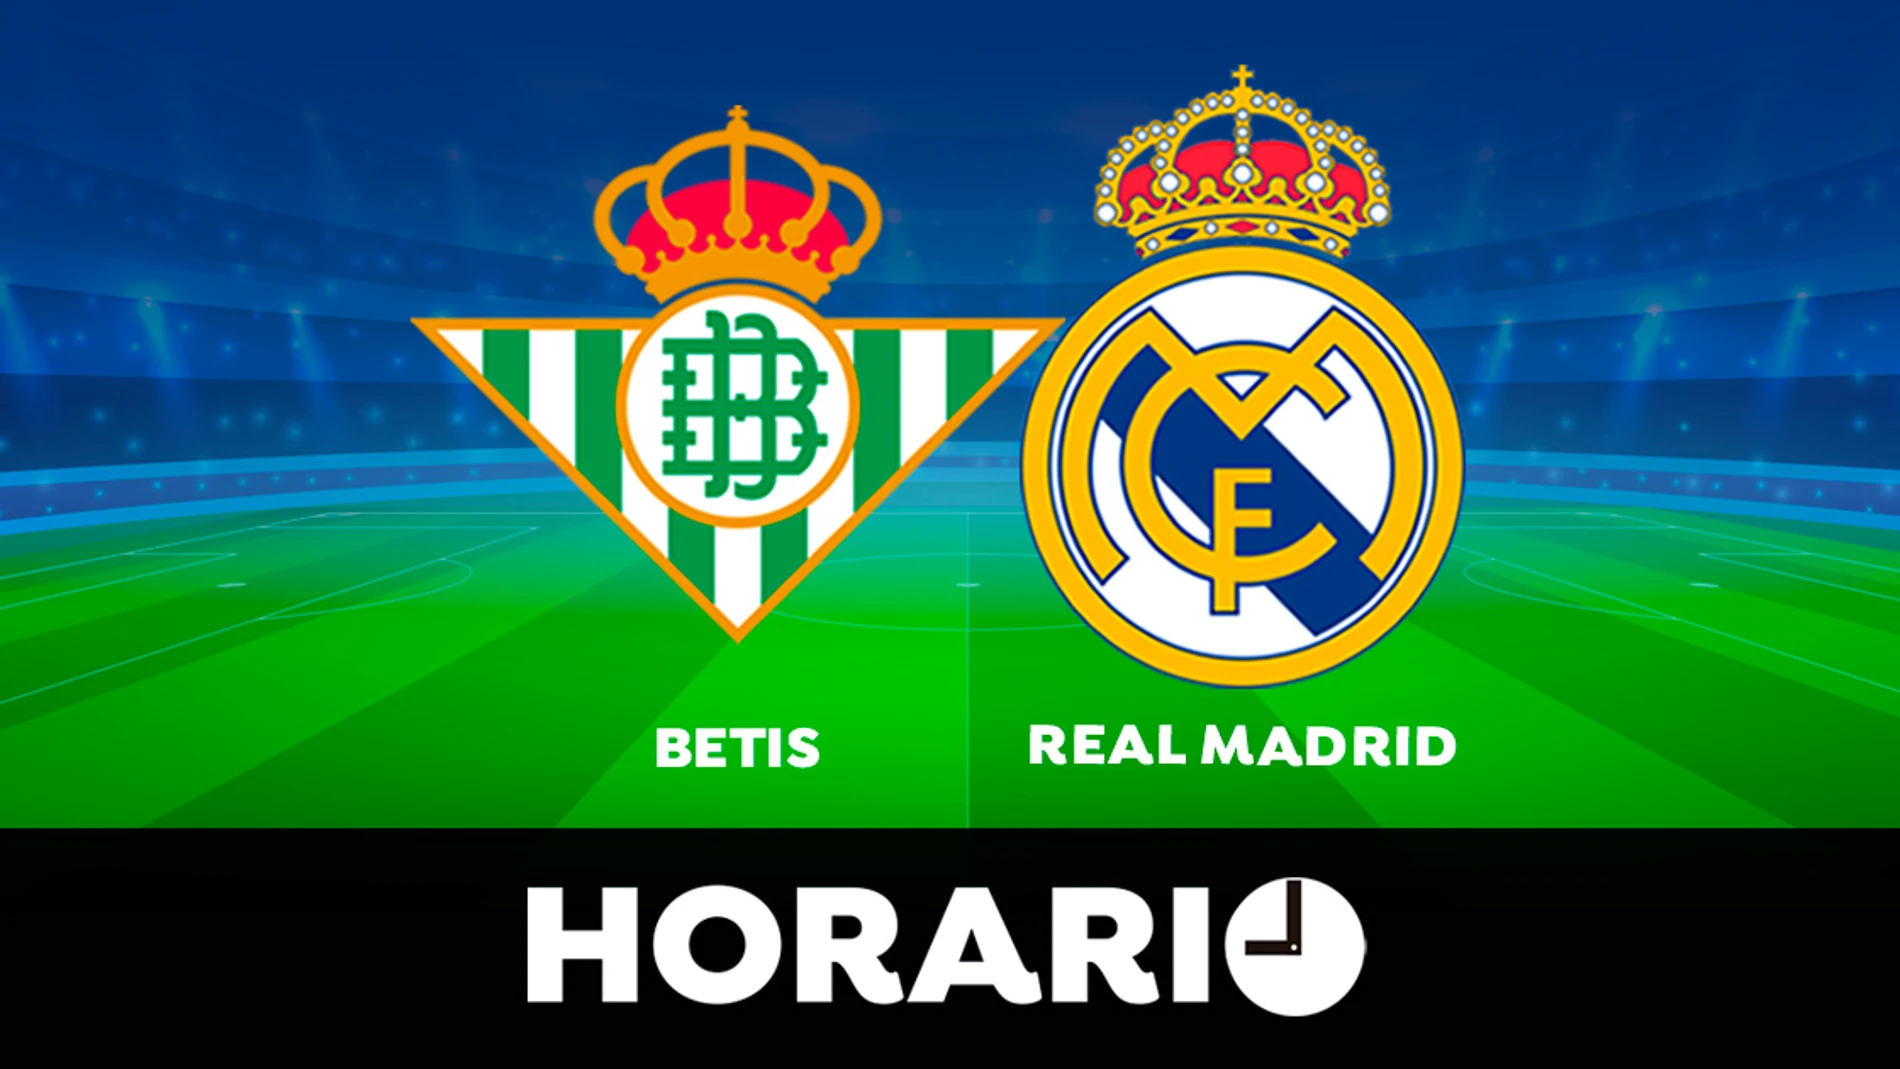 Betis - Real Madrid: Horario y dónde ver el partido de LaLiga en directo